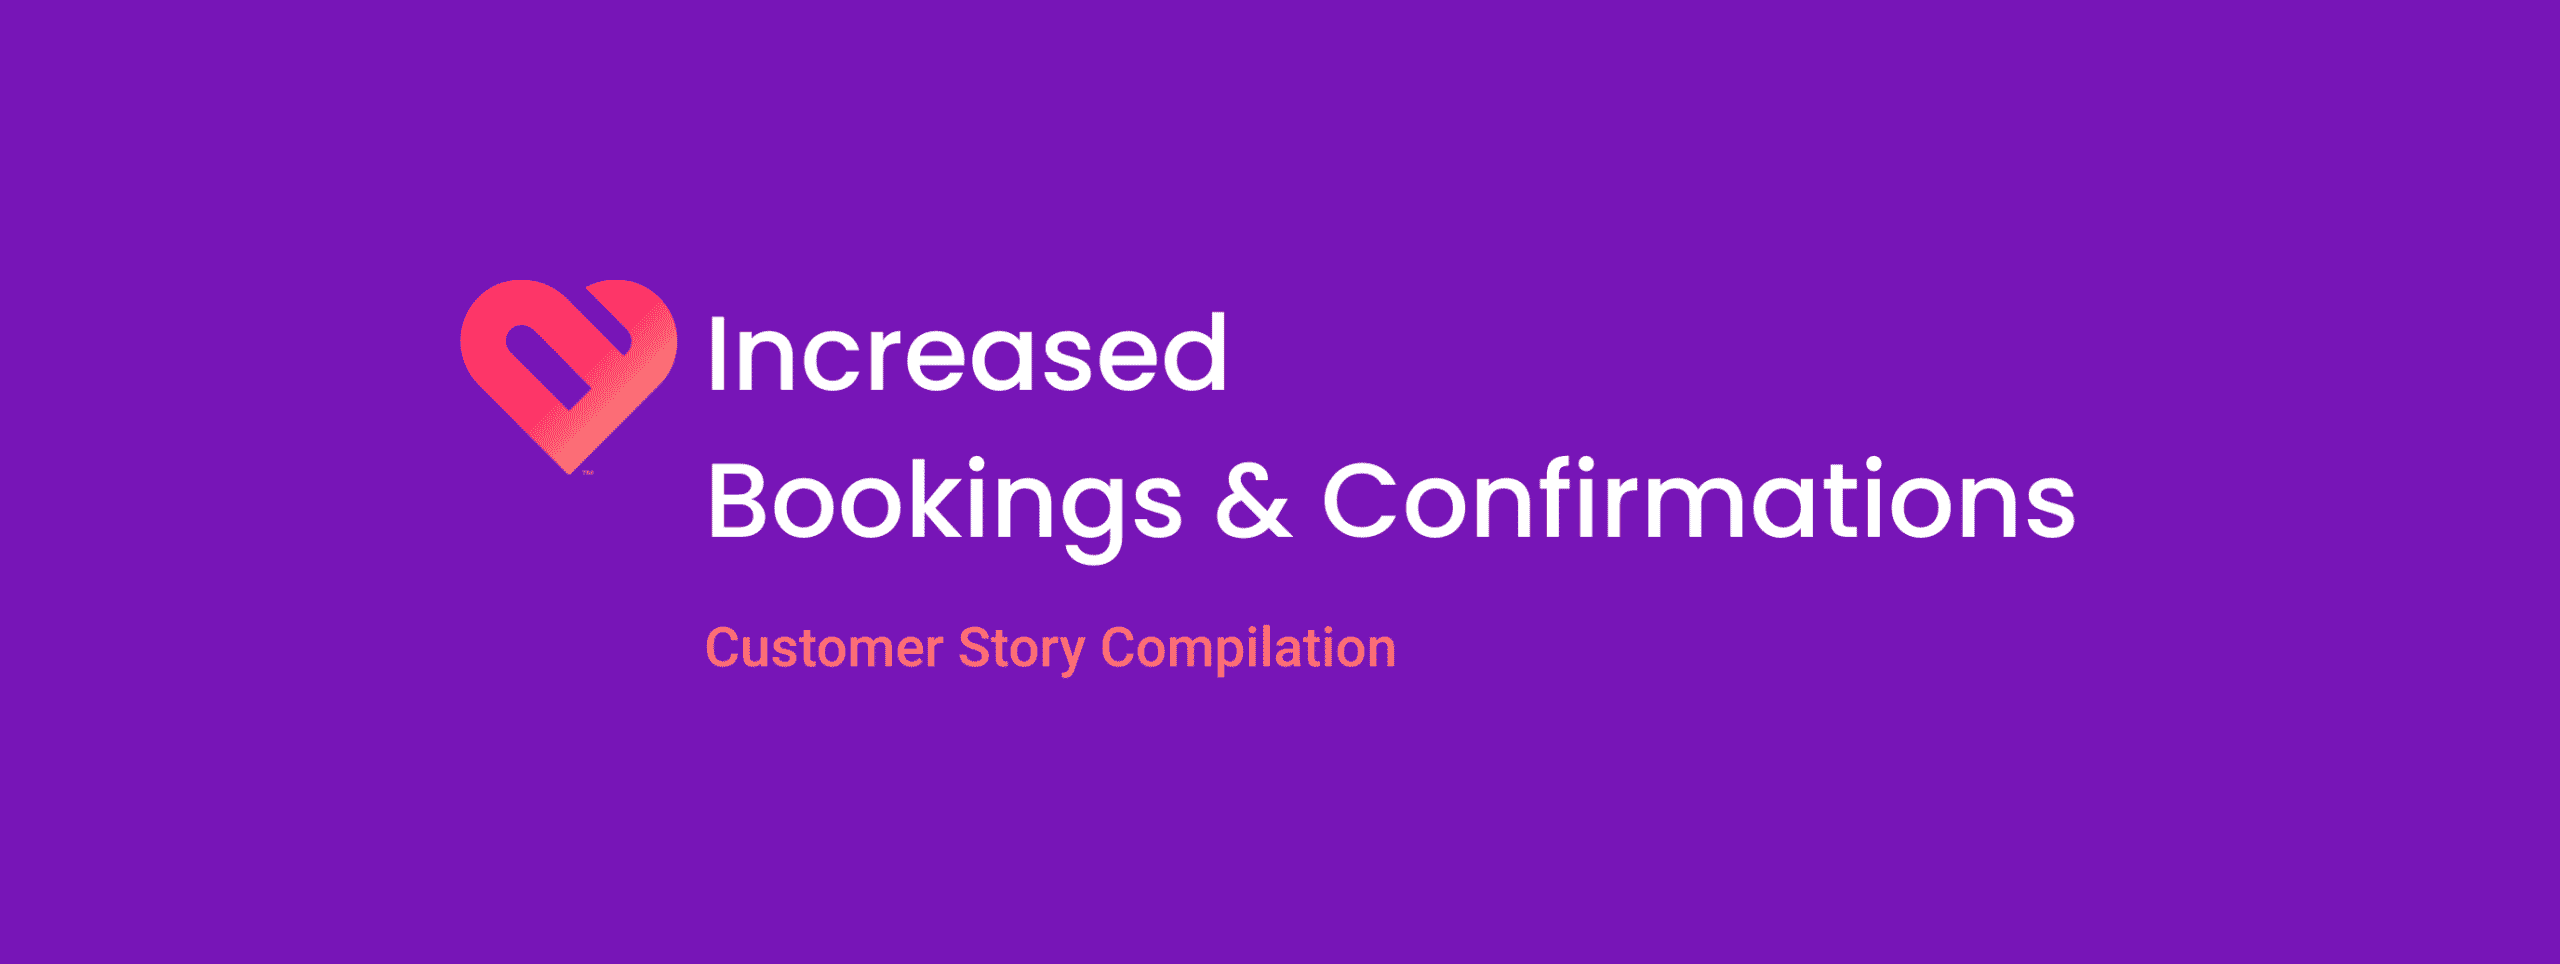 increased bookings confirm customer stories header